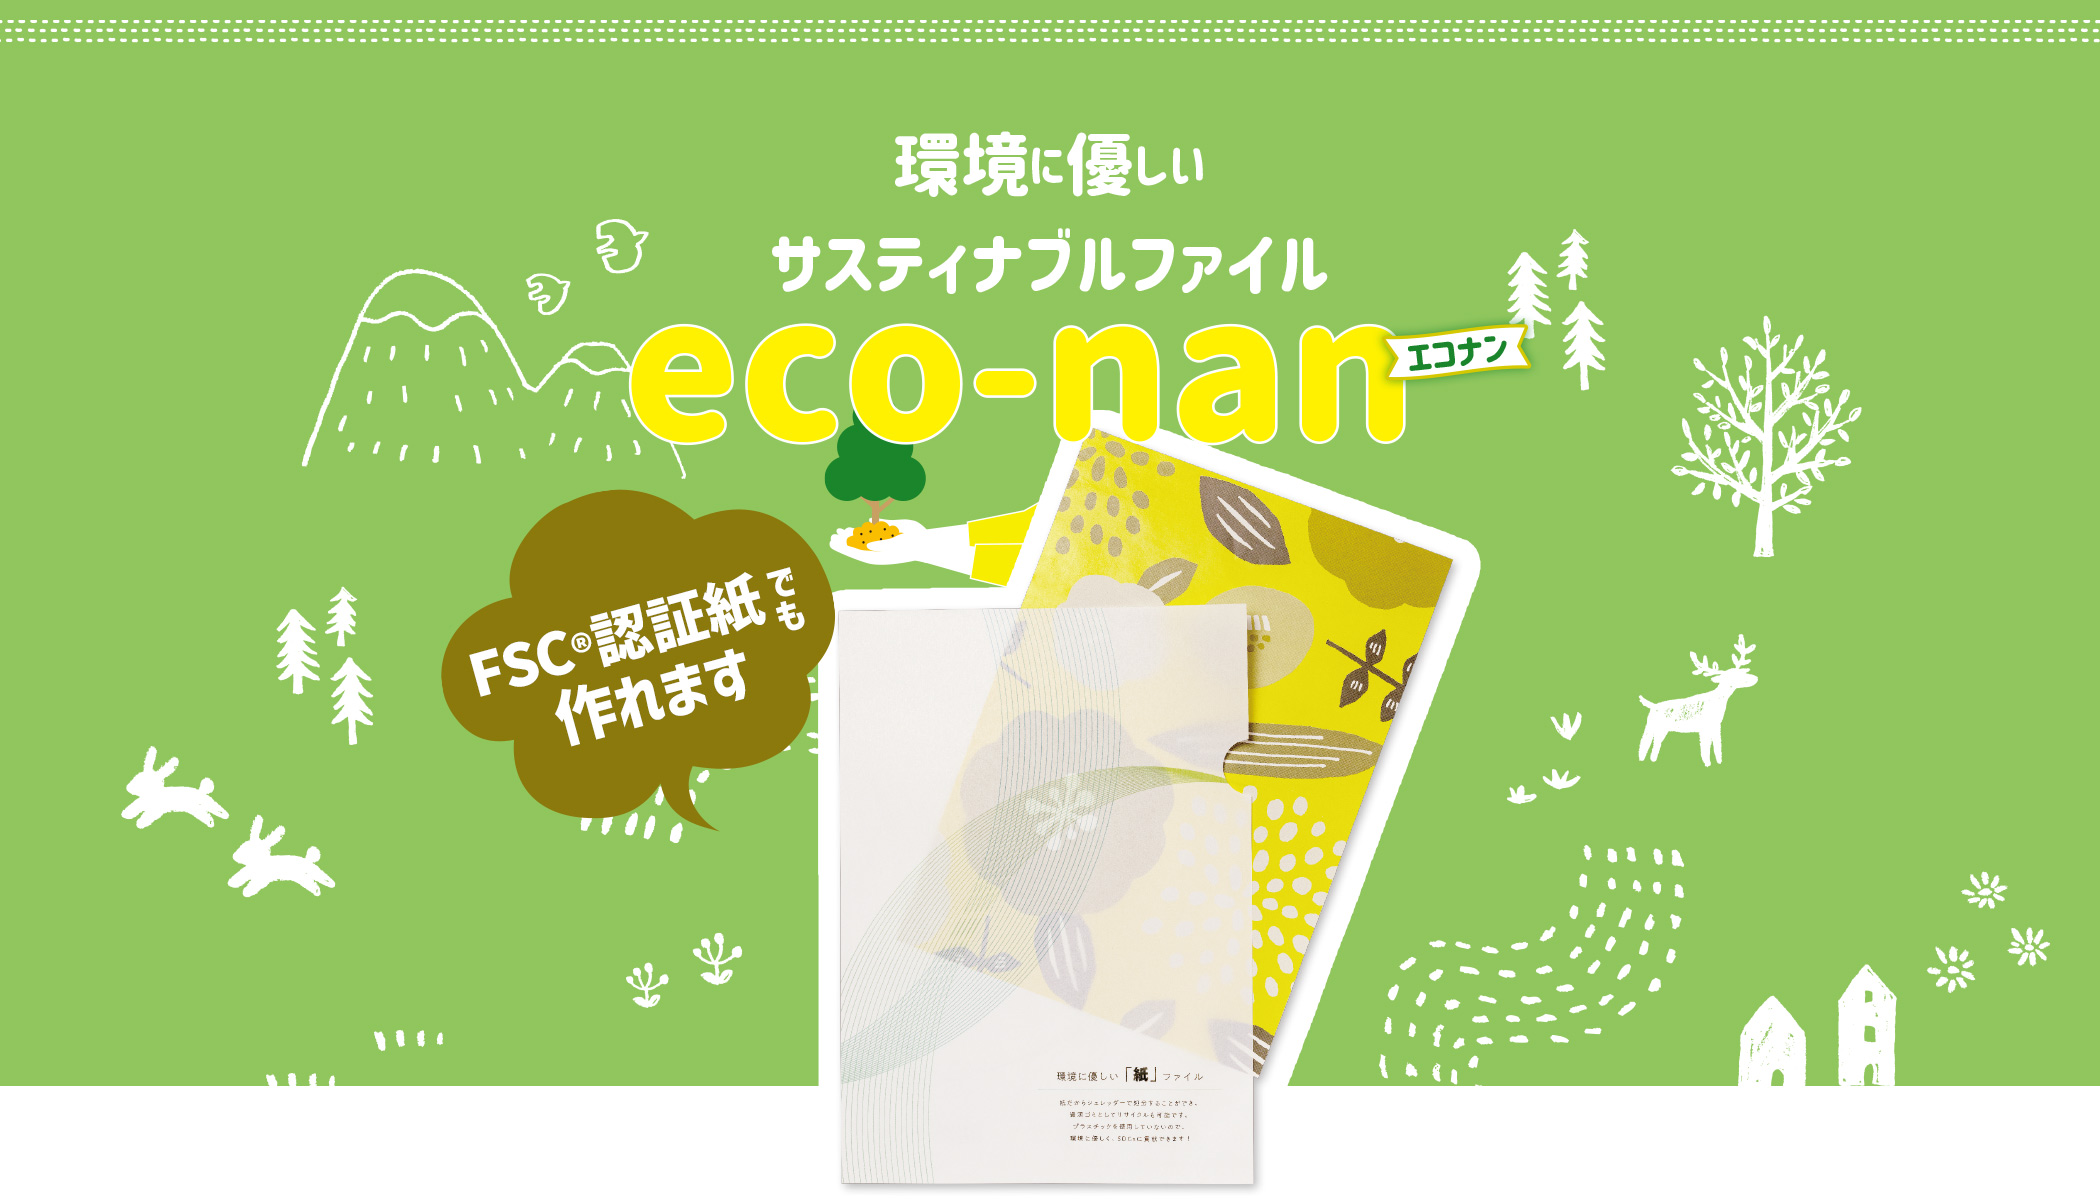 環境に優しい紙製クリアファイルの印刷なら「eco-nan エコナン」